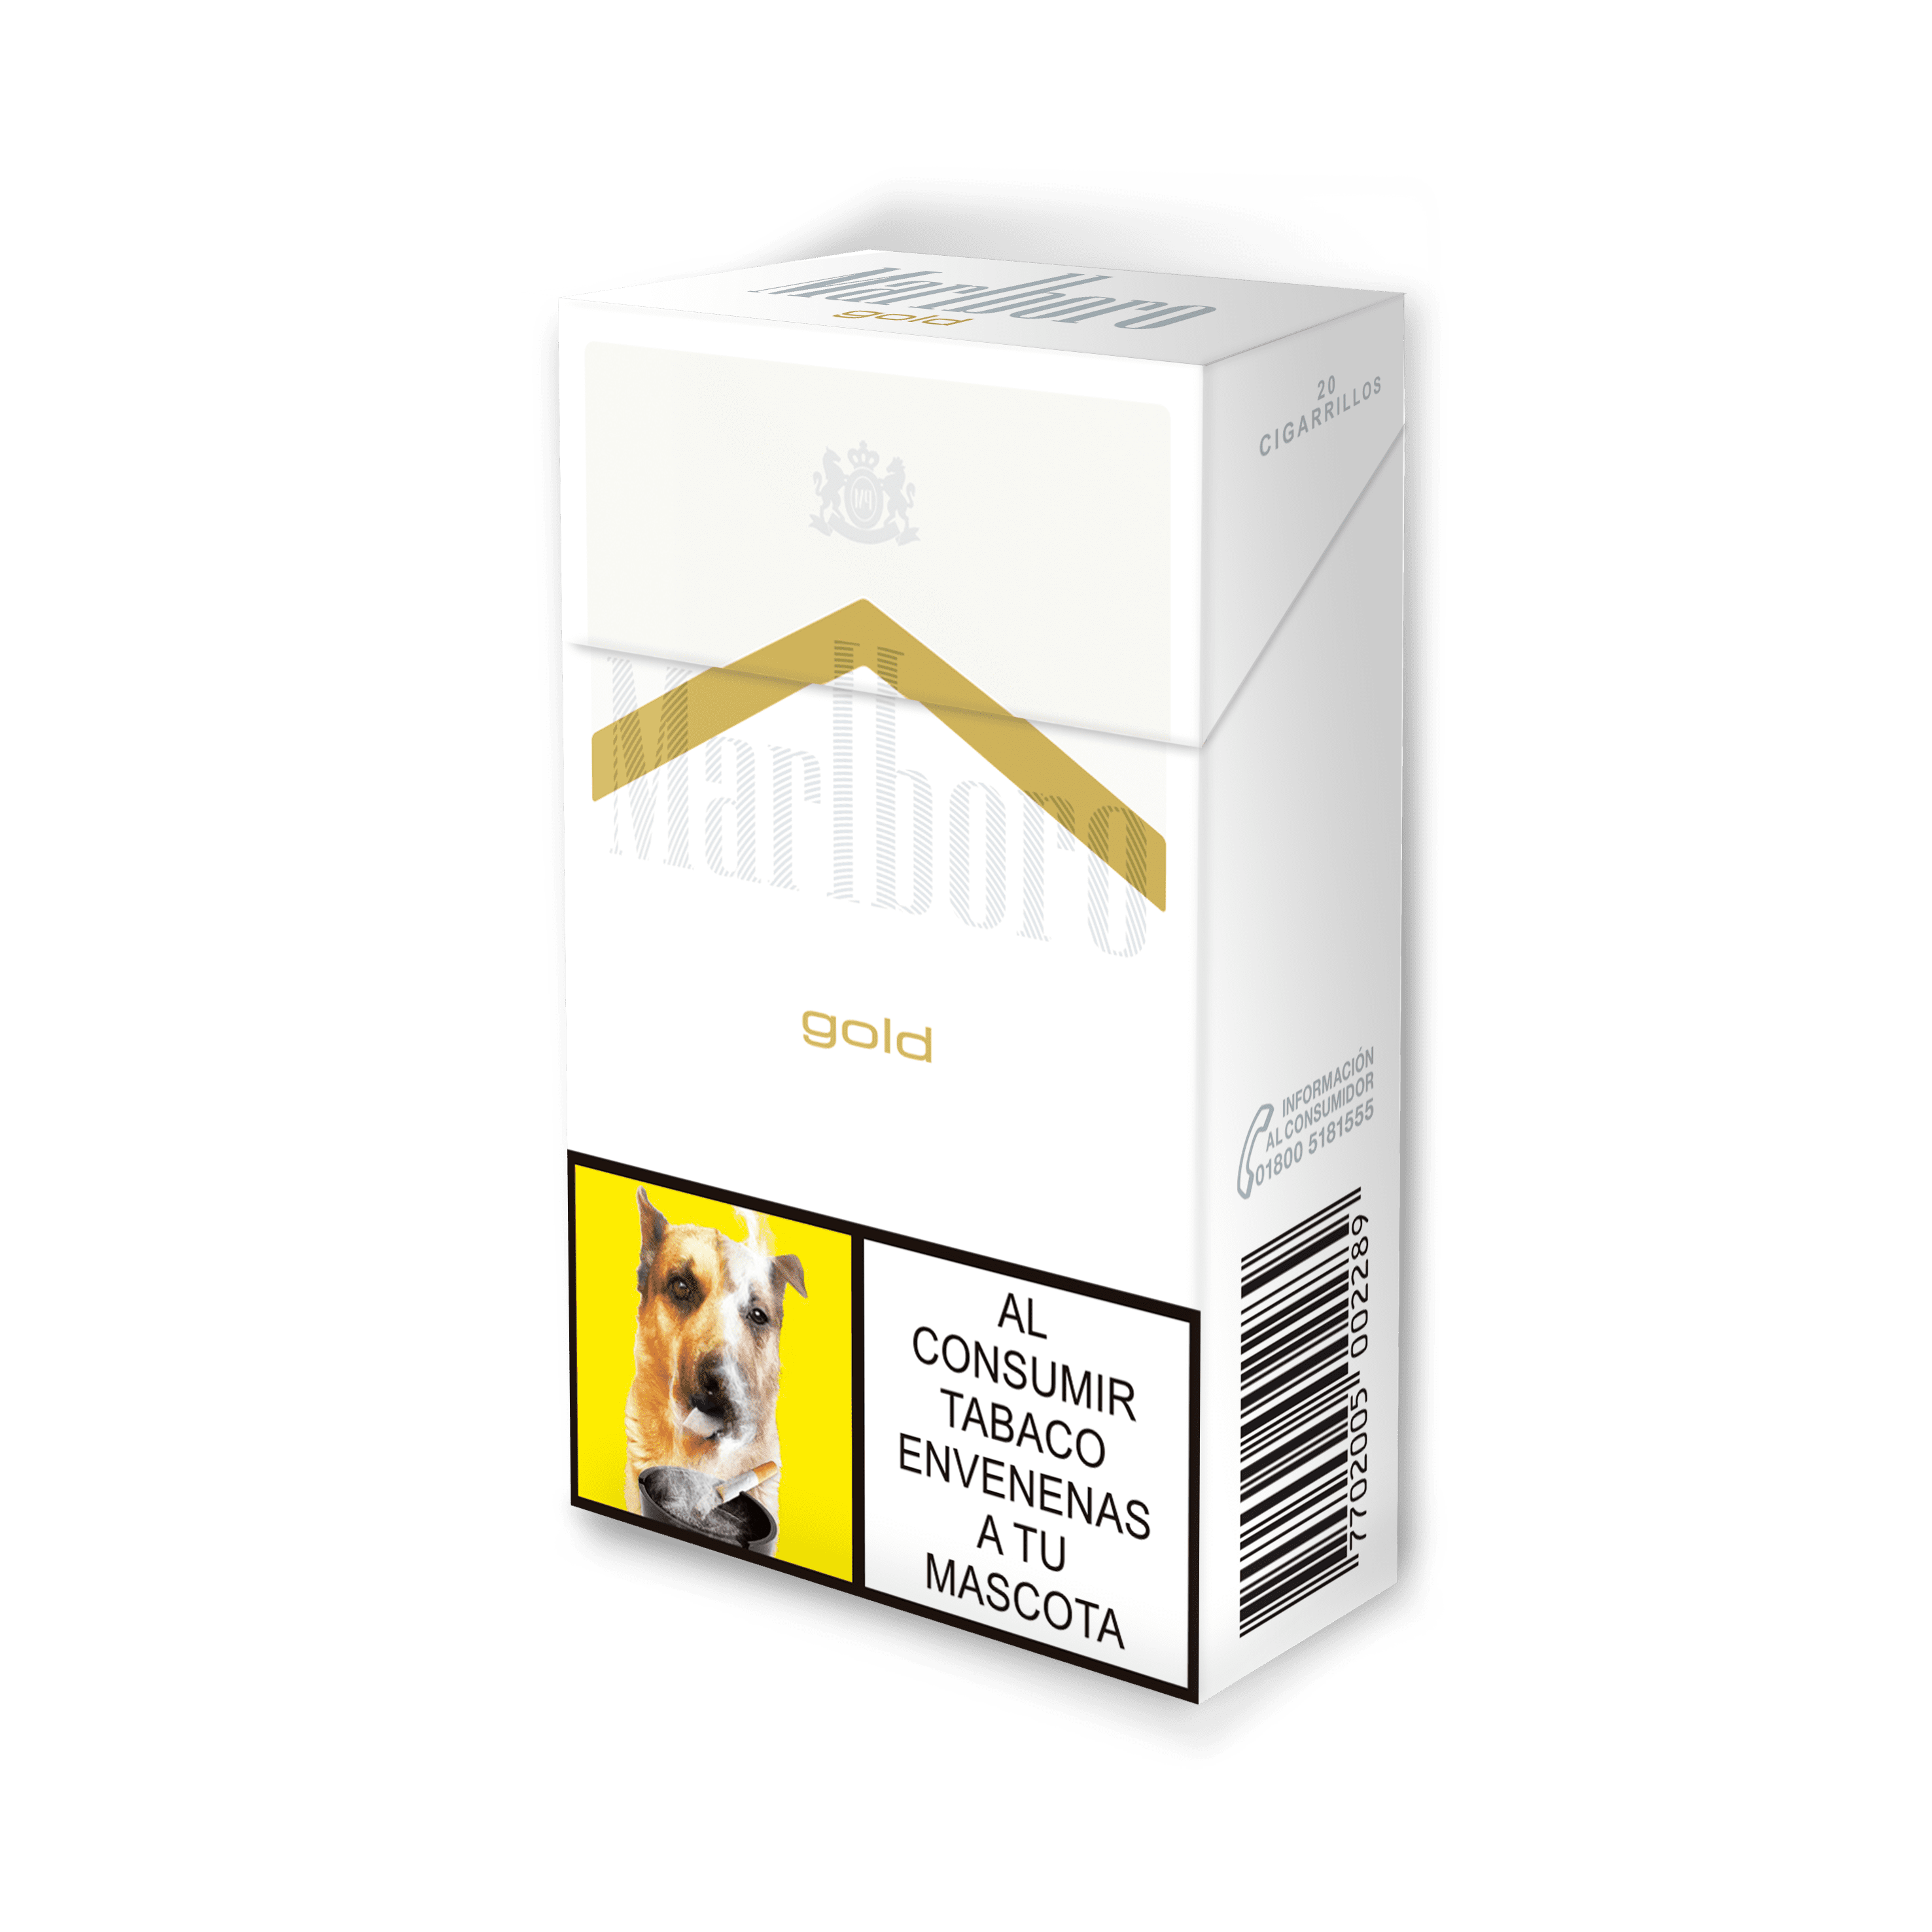 Cigarrillo Marlboro Gold Original Ks Box 60dp x10Un x20cig Nueva Presentación